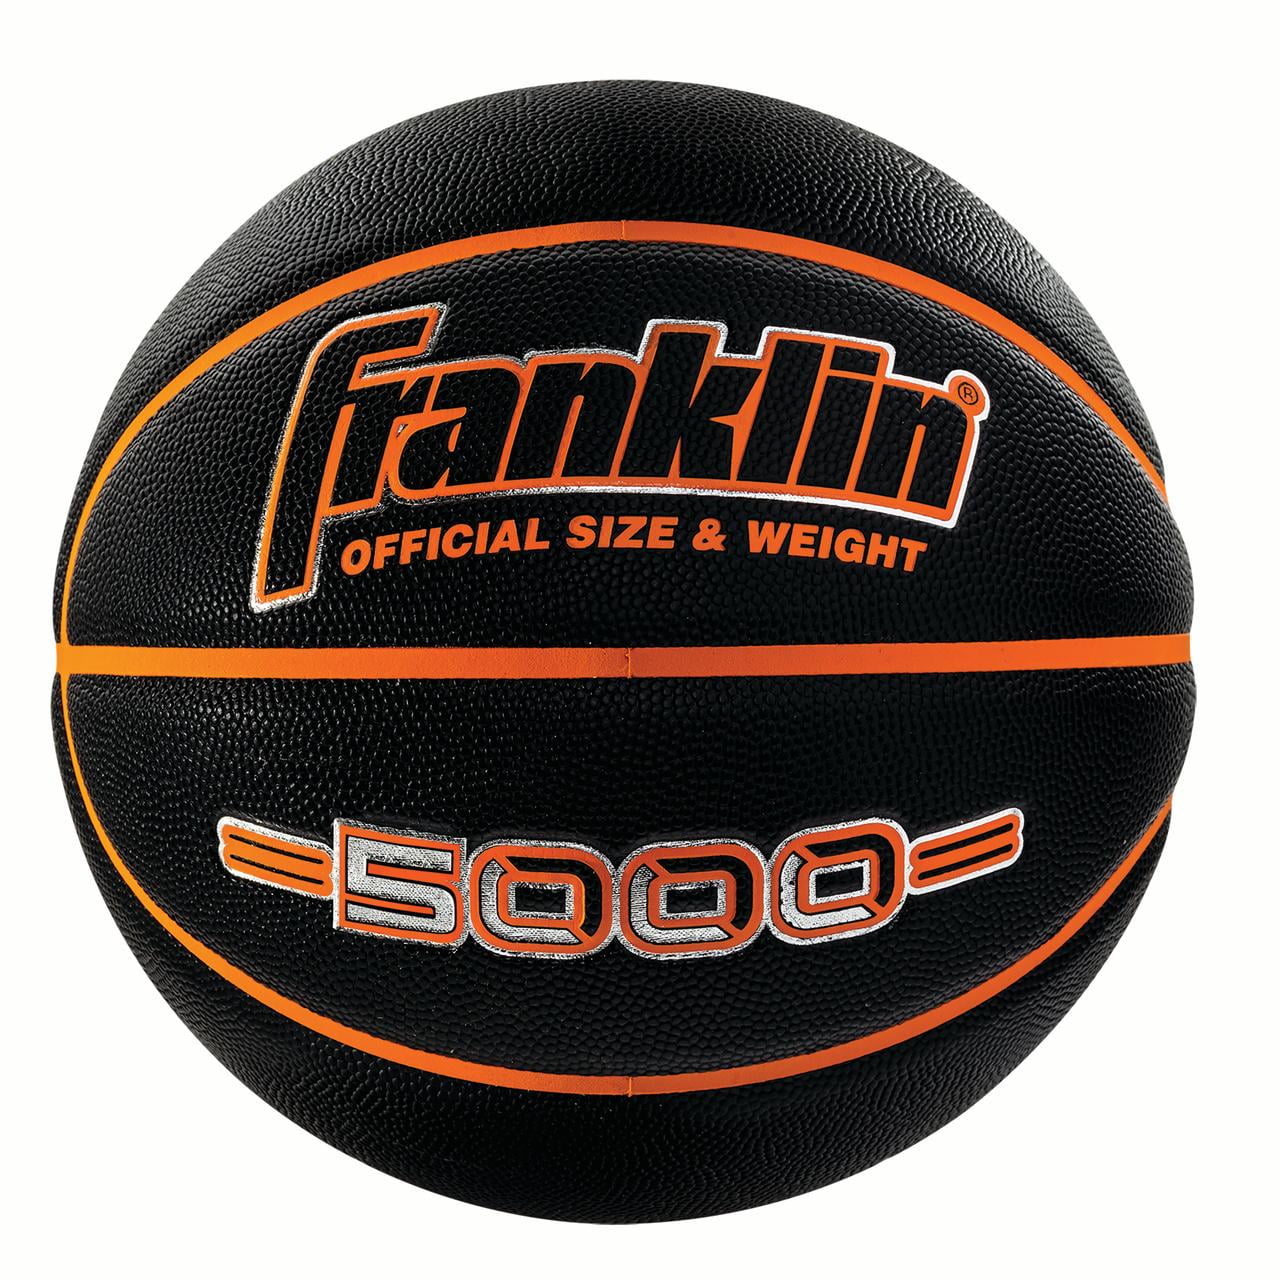 Franklin Sports 5000 Official Size 29.5 Basketball - Black/Orange